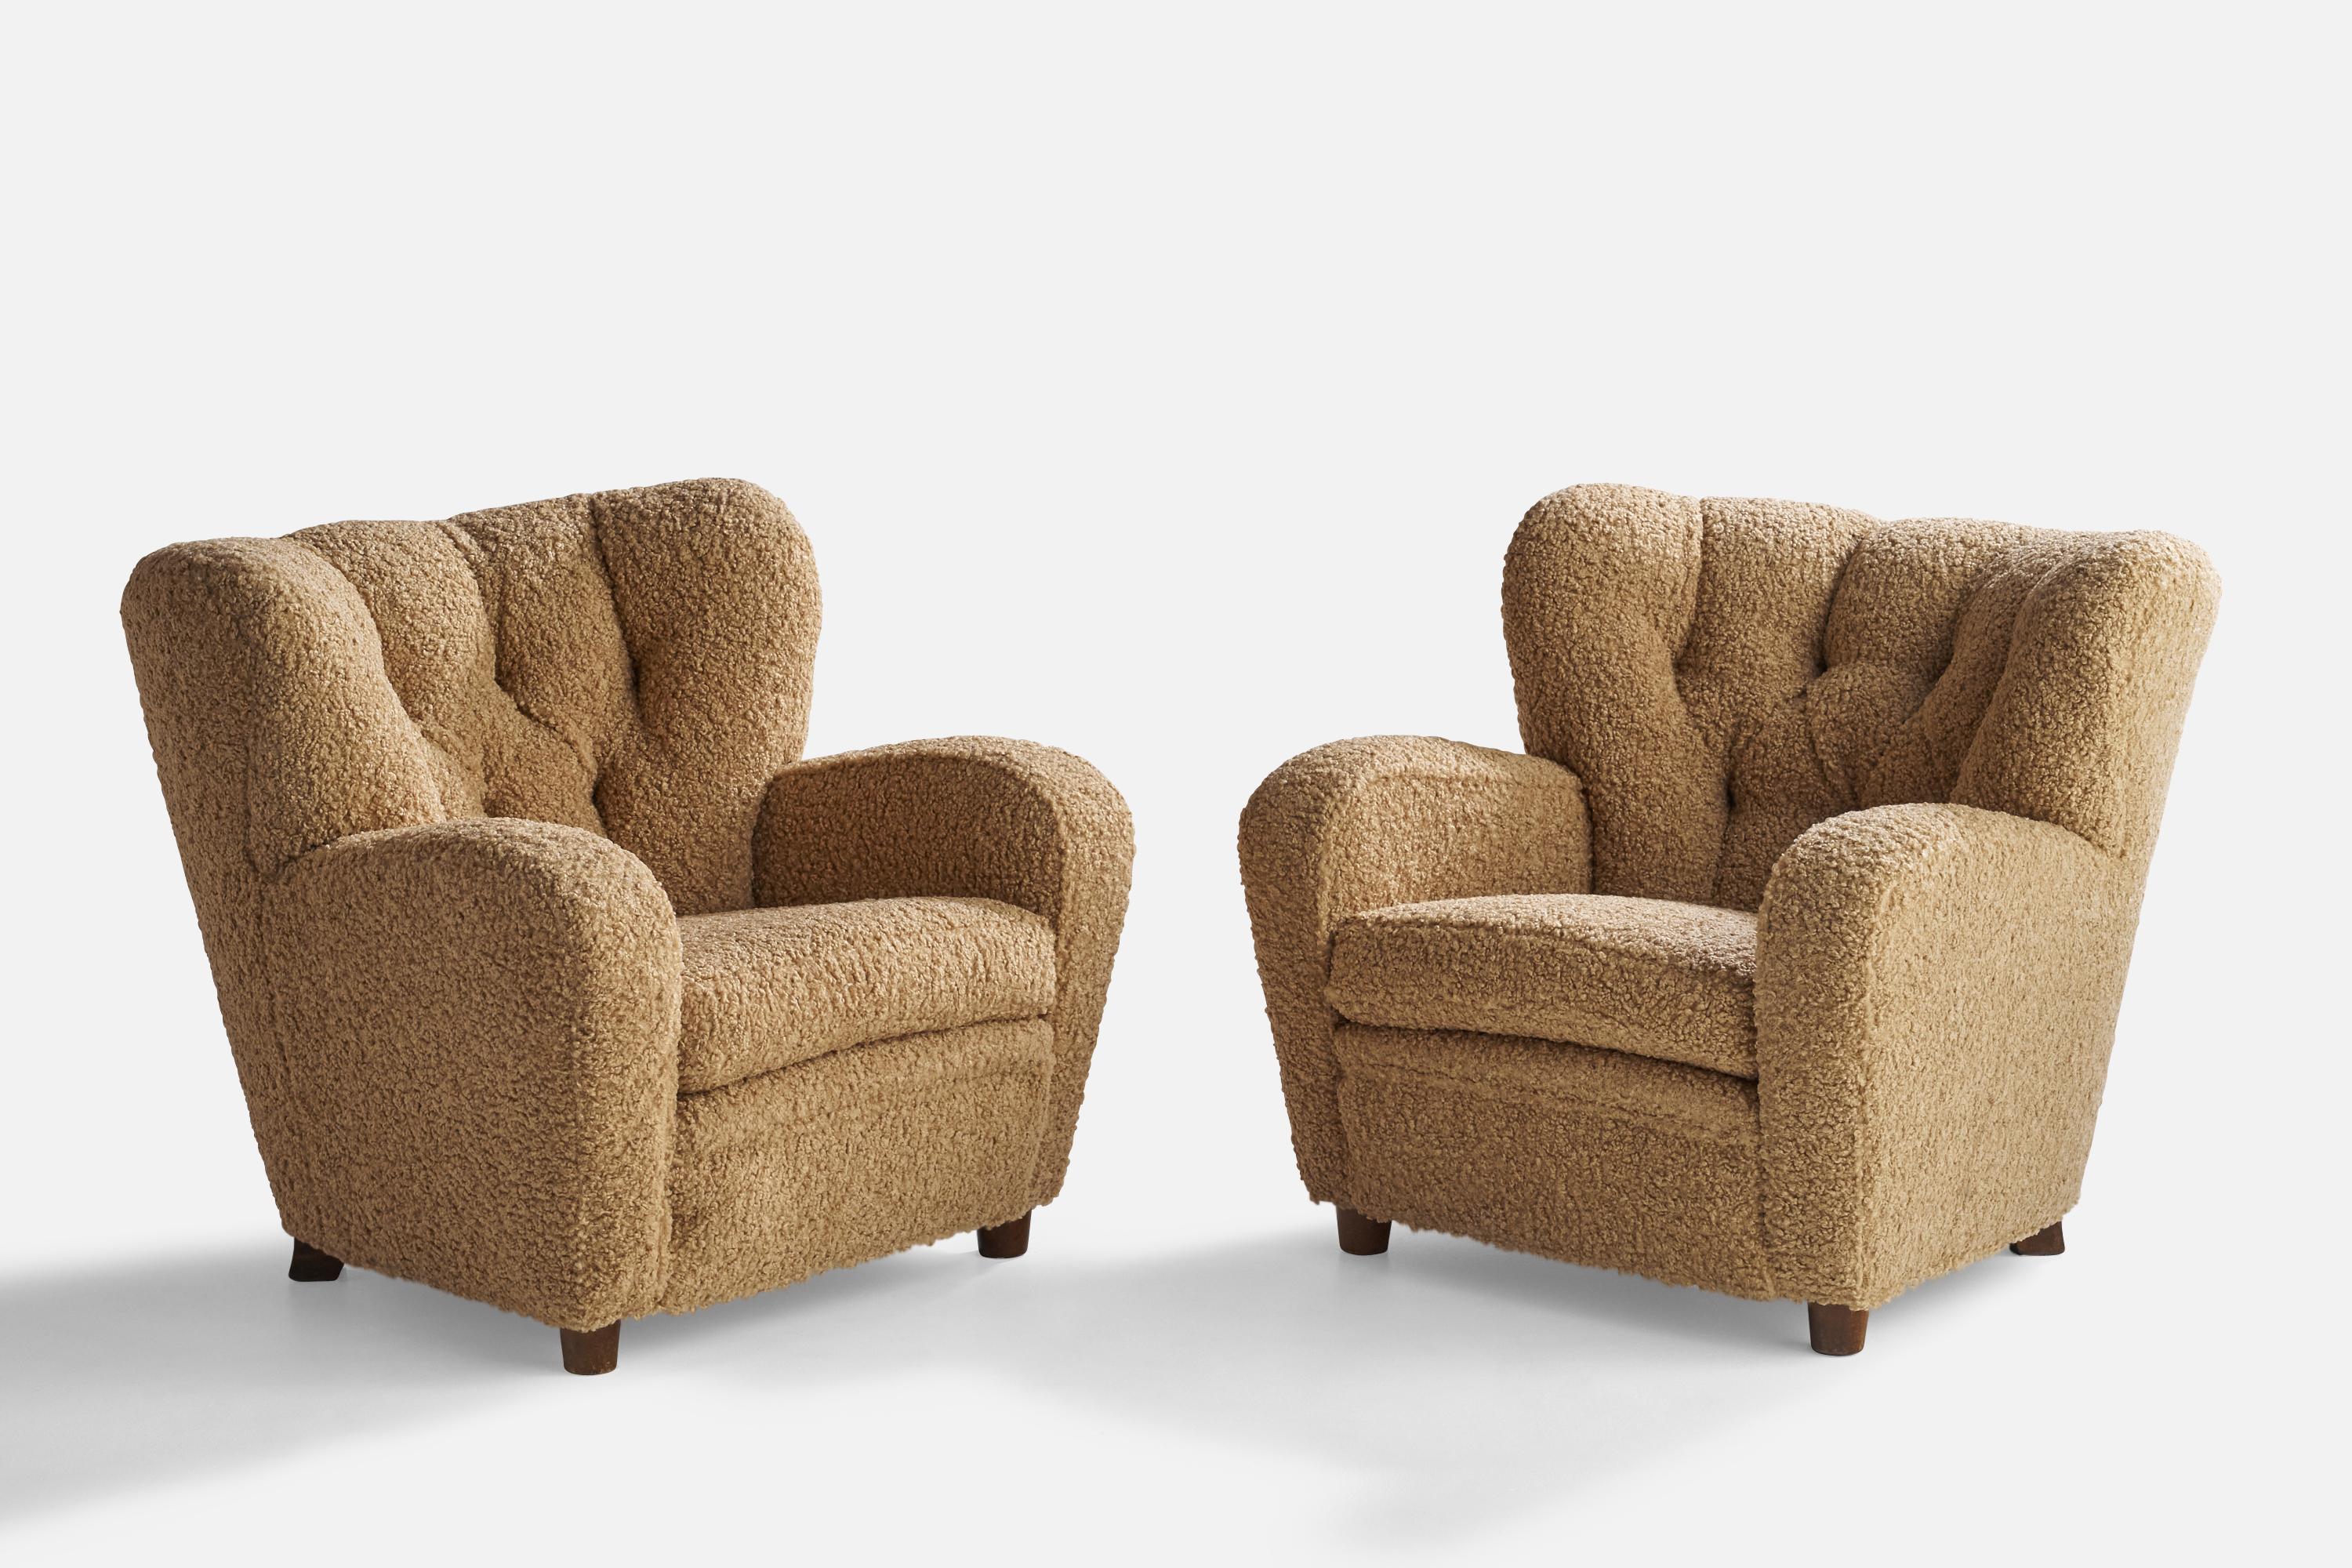 Paire de chaises de salon en bouleau teinté foncé et tissu bouclé beige, conçues et produites en Finlande, années 1940.

Hauteur d'assise 16,5